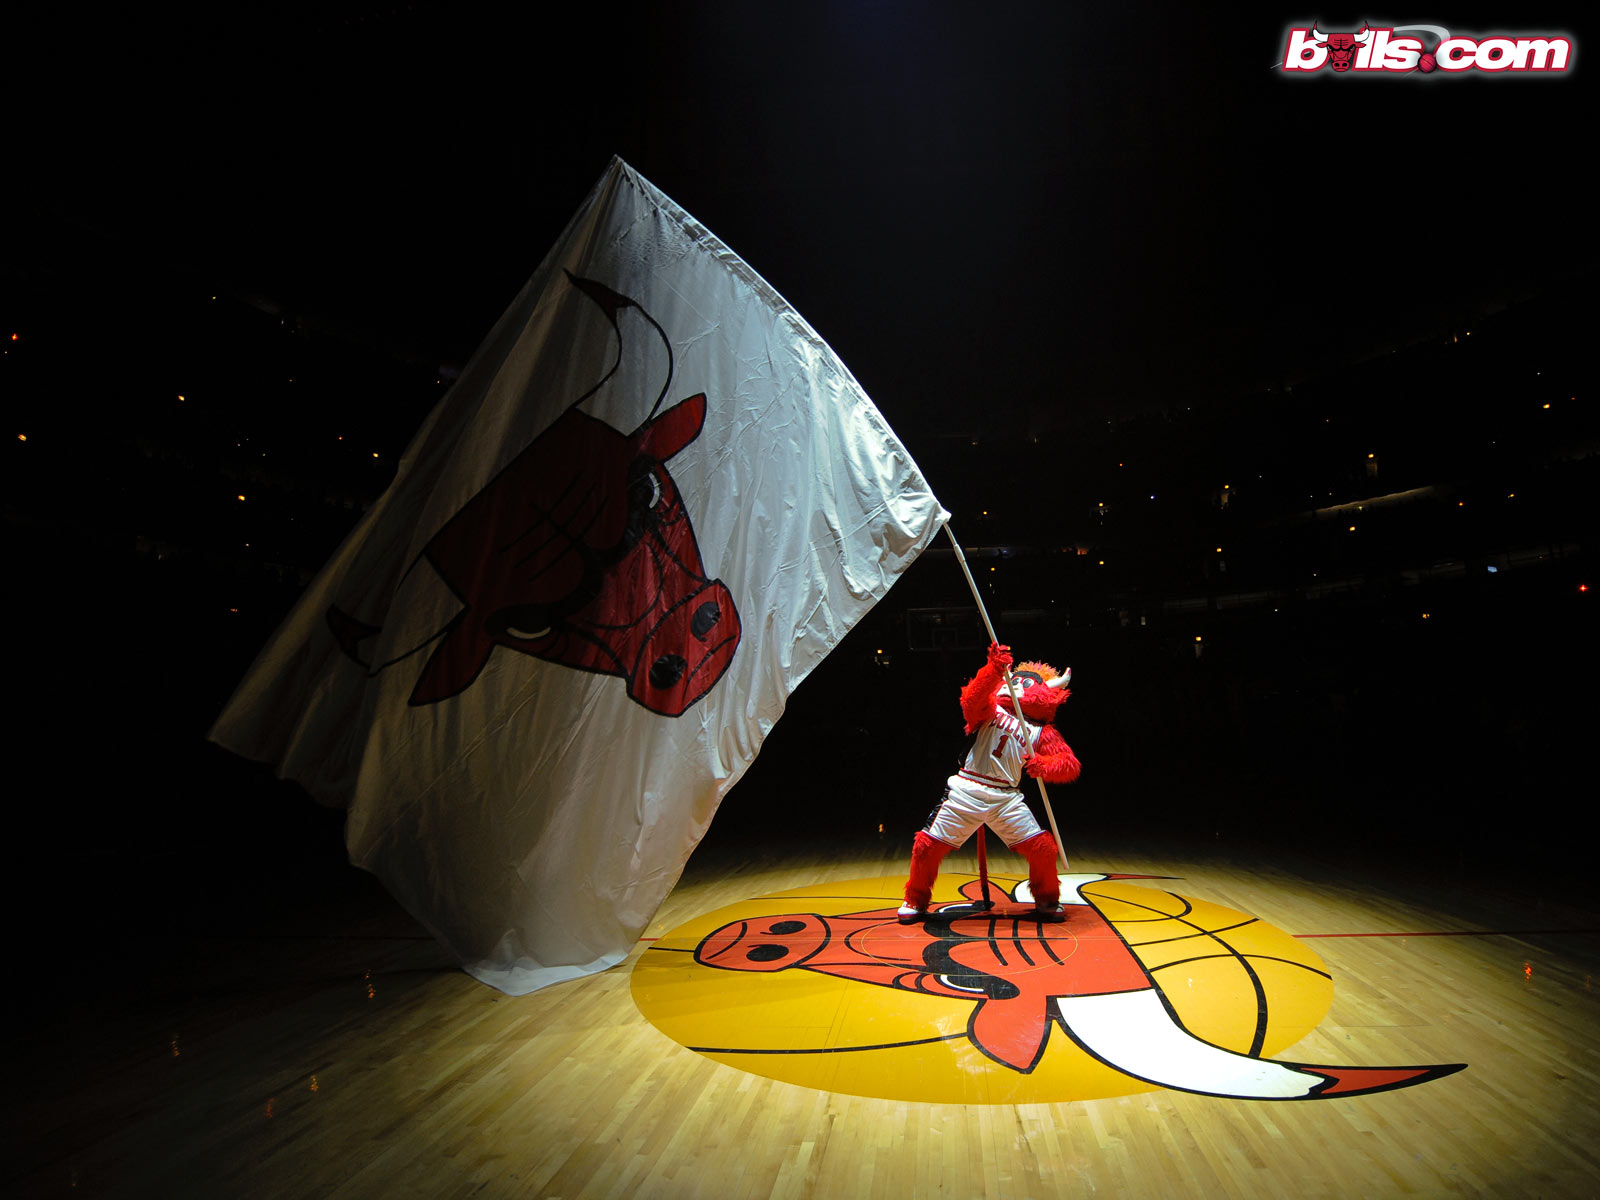 Download Chicago Bulls NBA wallpaper ImageBankbiz